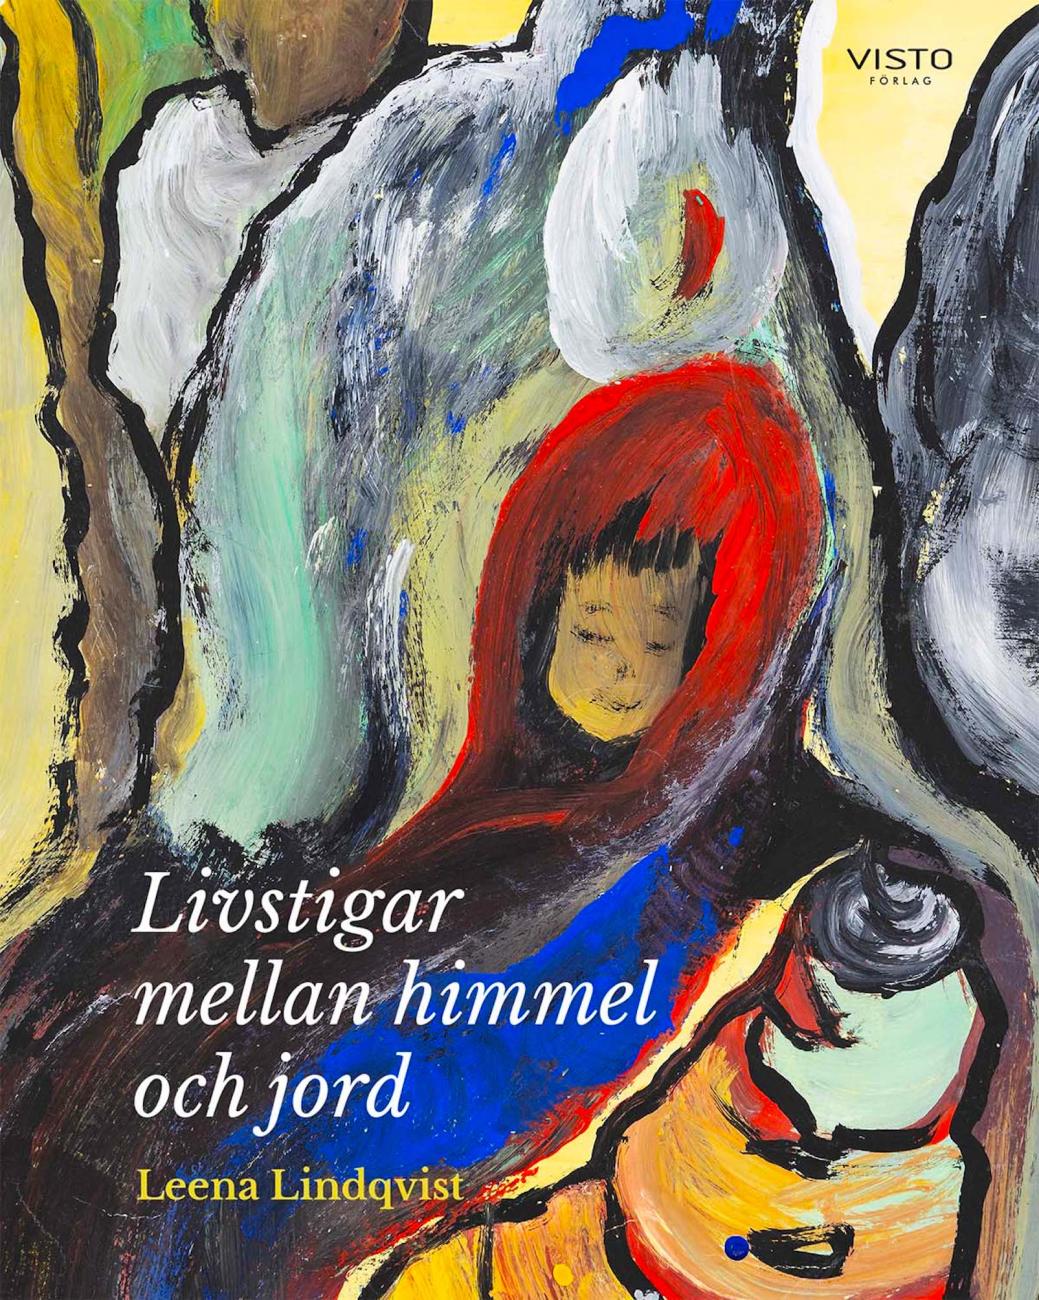 Omslaget är taget från en av Leena Lindqvist egna målningar. 